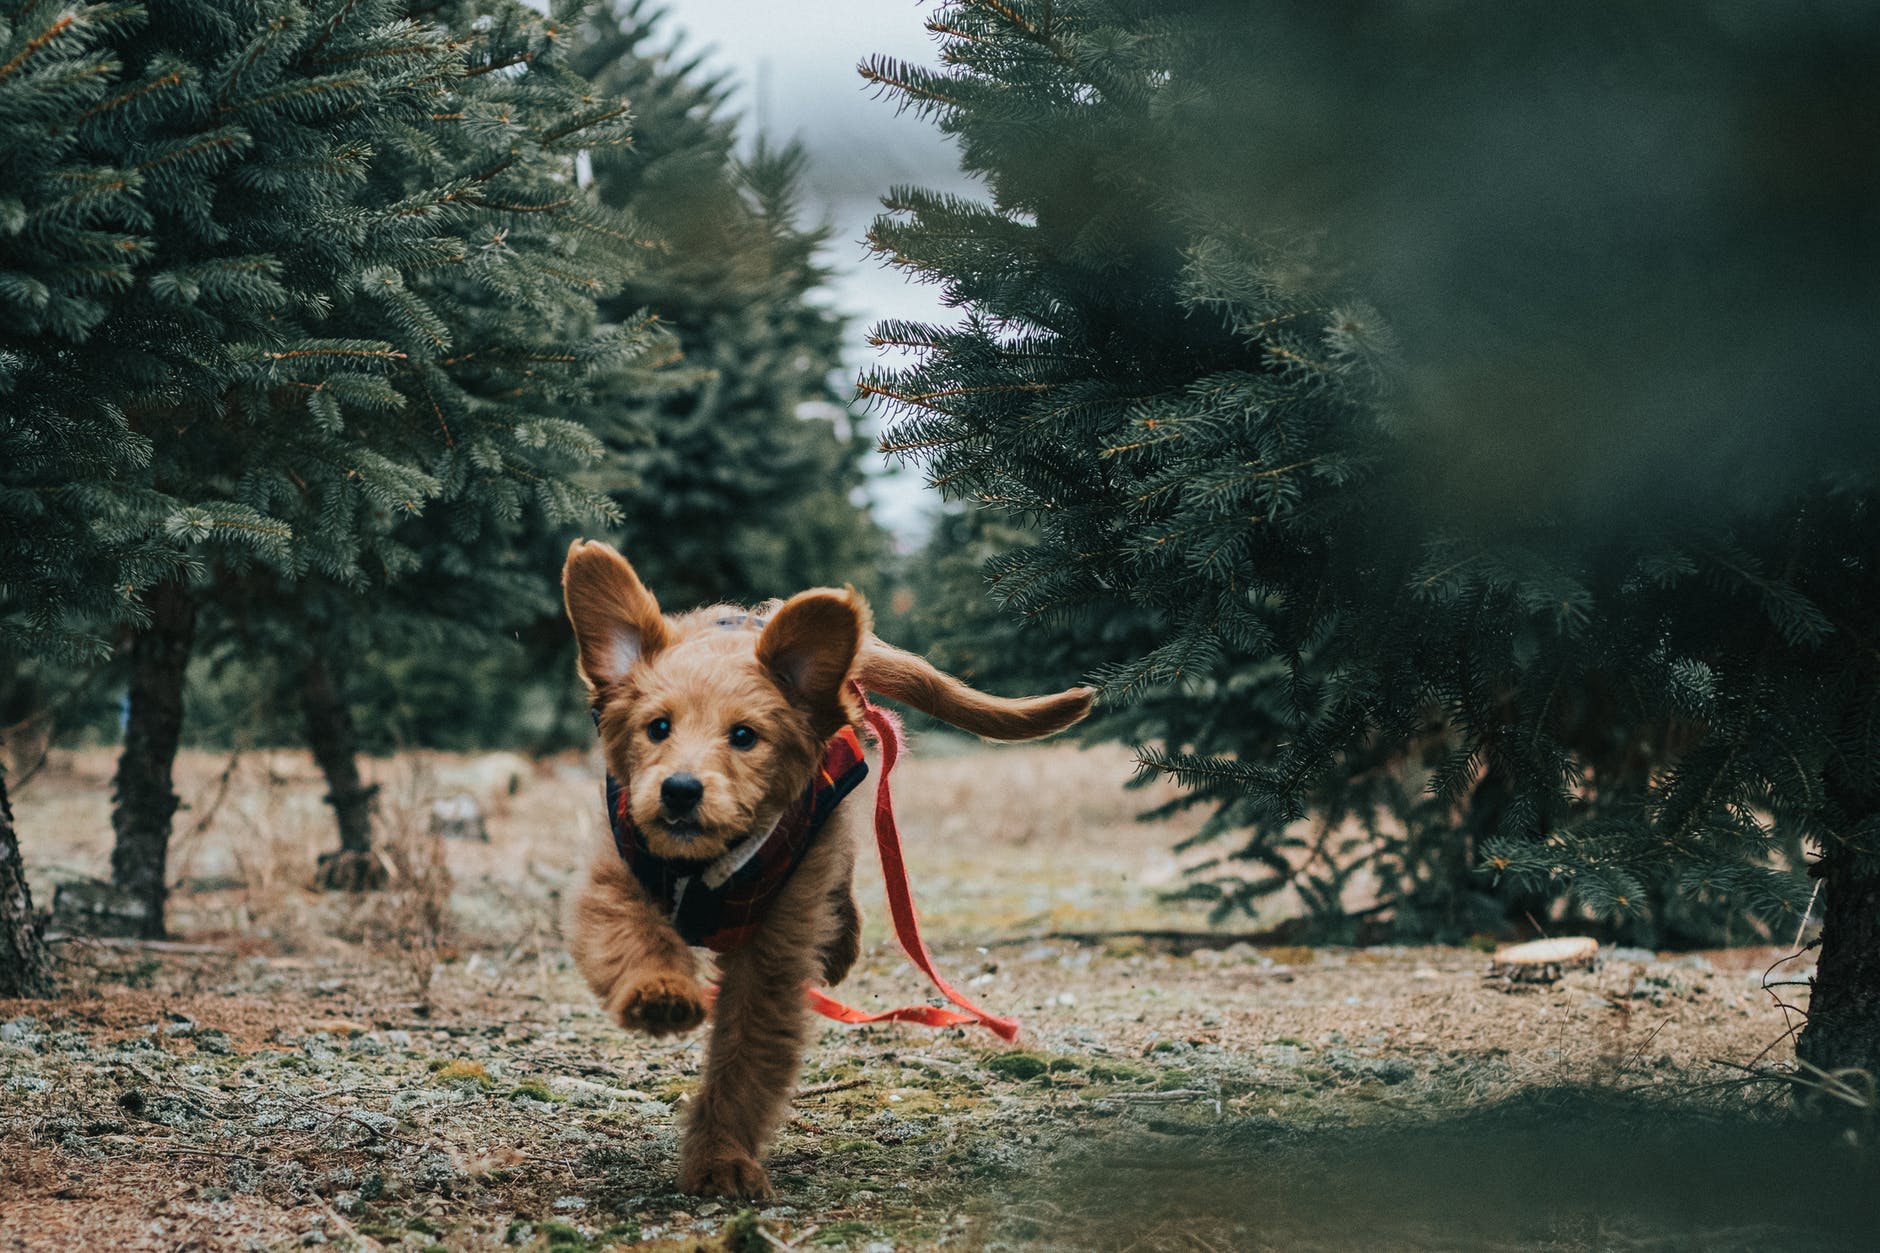 Att ta en skogspromenad med din hund lite då och då är bra, då miljön blir en omväxling. Är det inga andra hundar eller människor i närheten kan det också vara skönt för hunden att slippa koppel och kunna springa fritt.